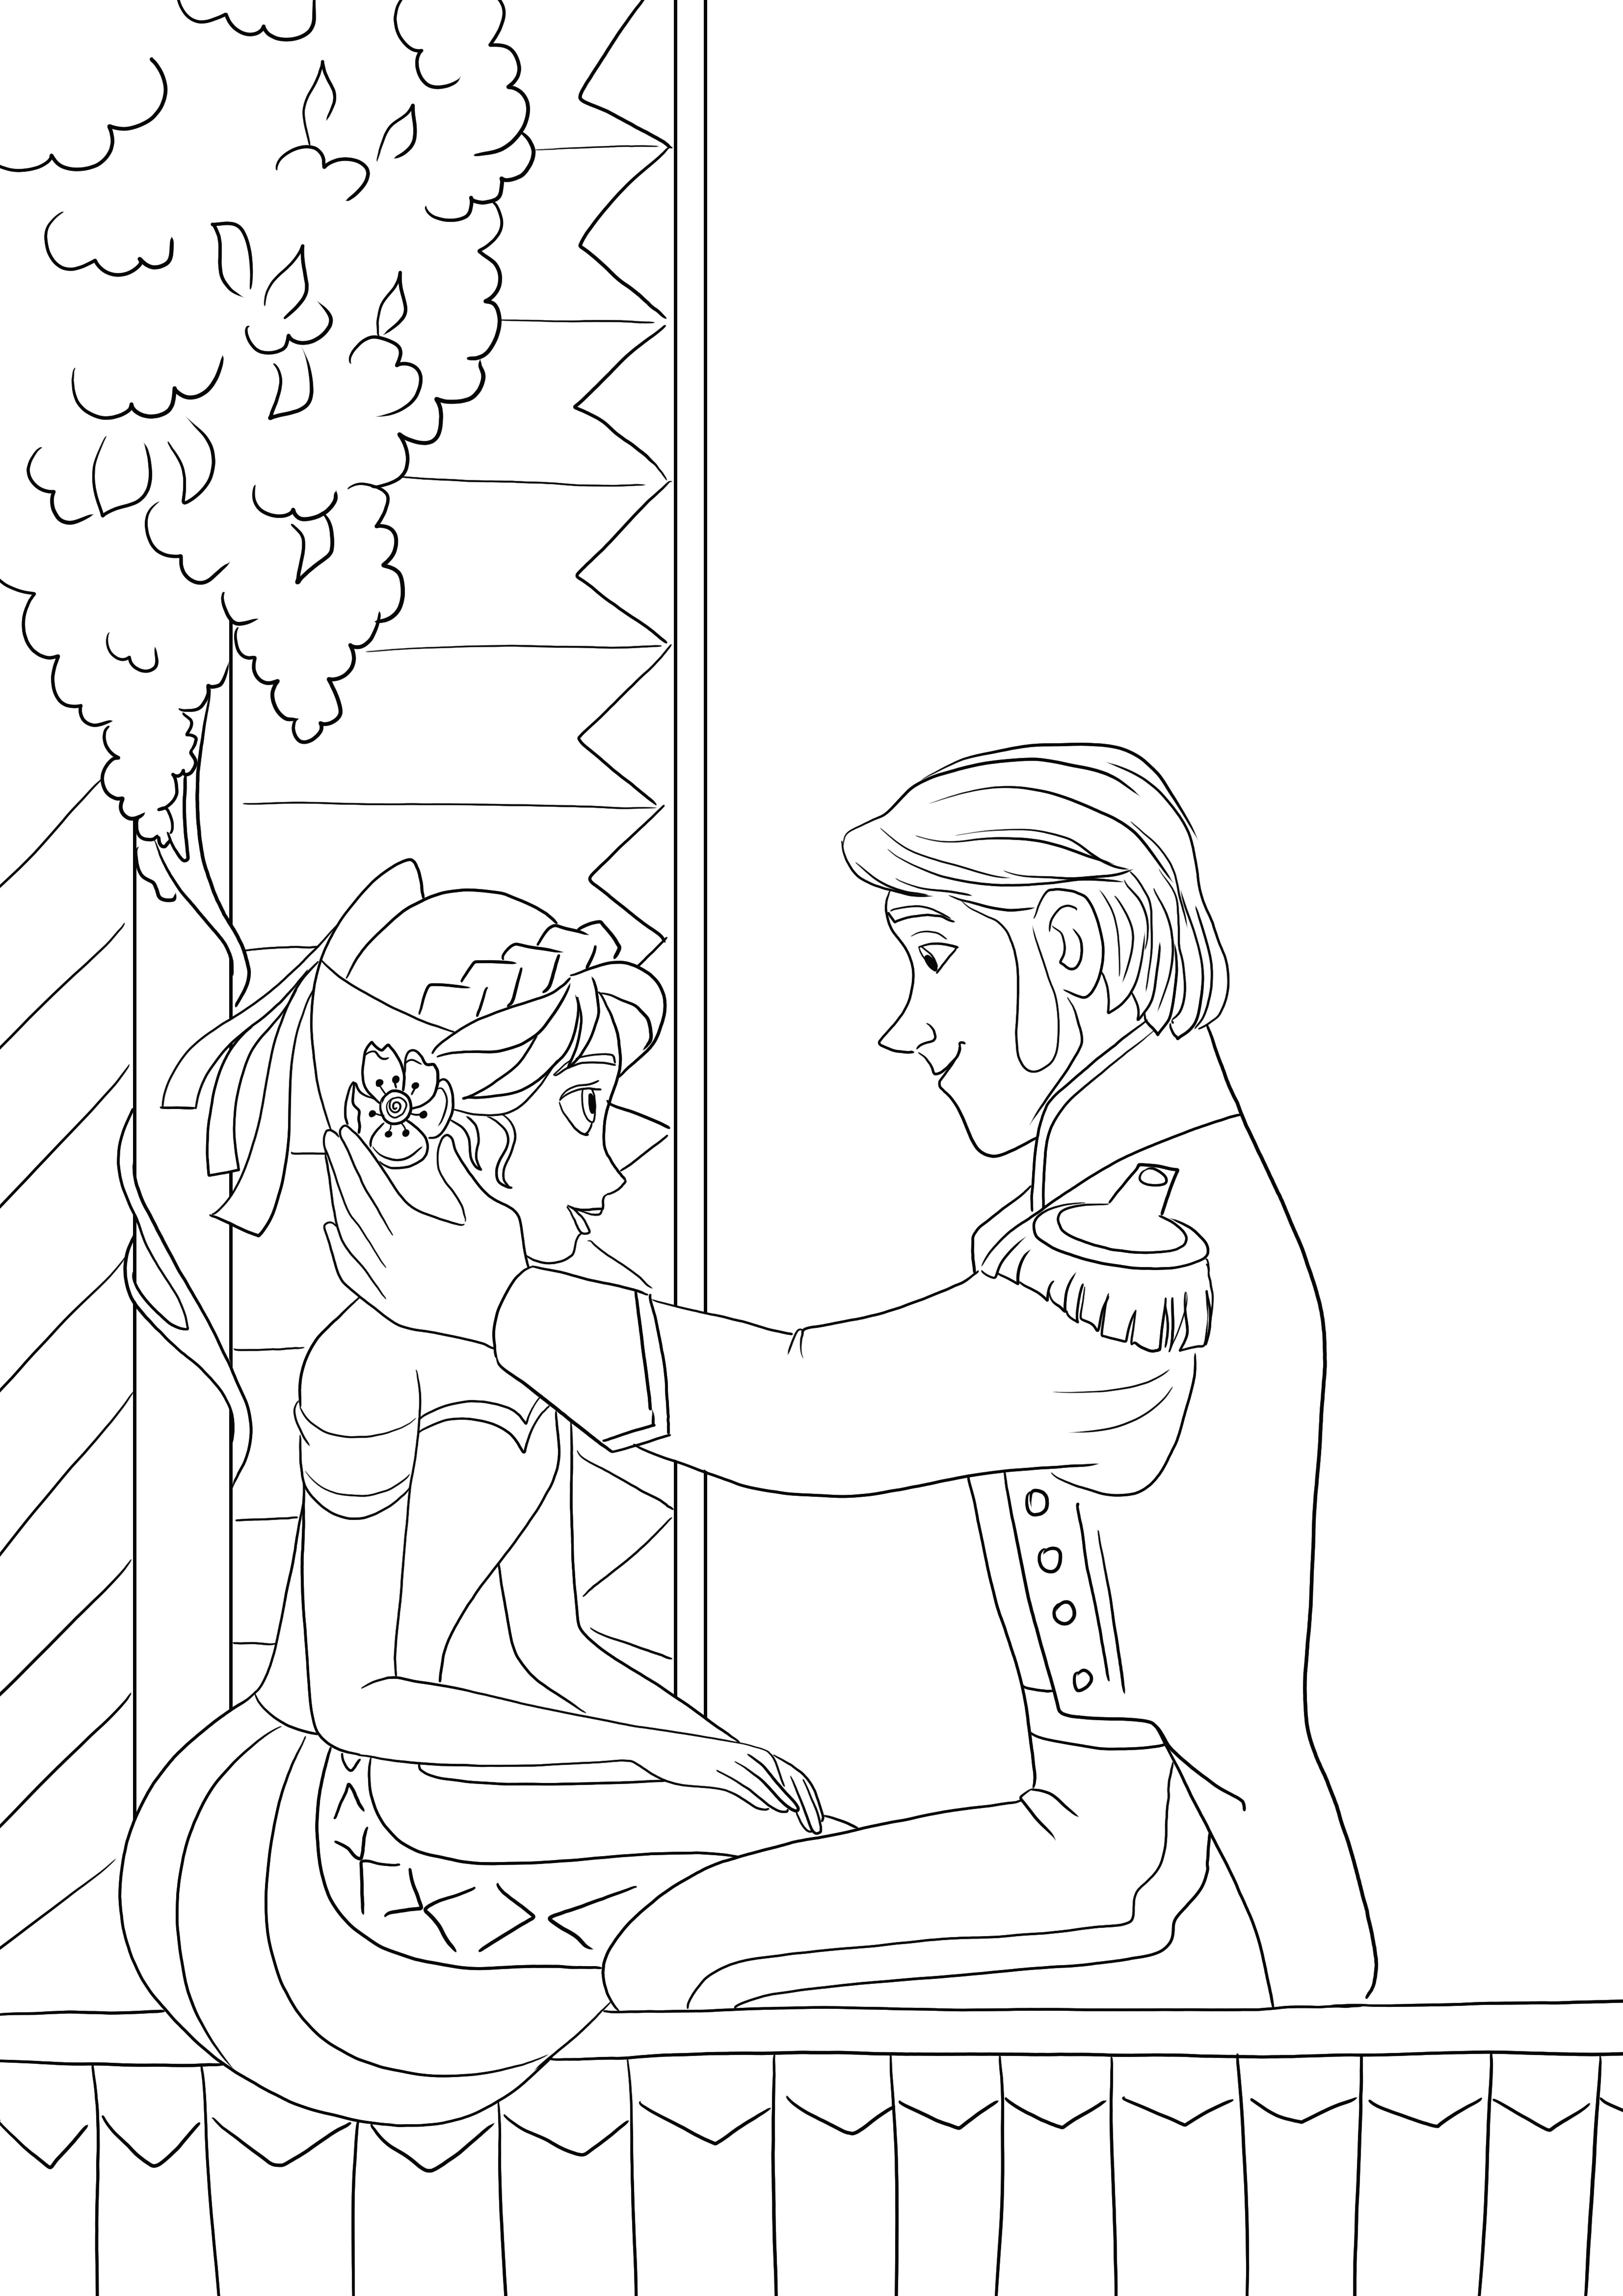 Gambar mewarnai manis Anna jatuh cinta dengan Hans gratis untuk diunduh atau dicetak